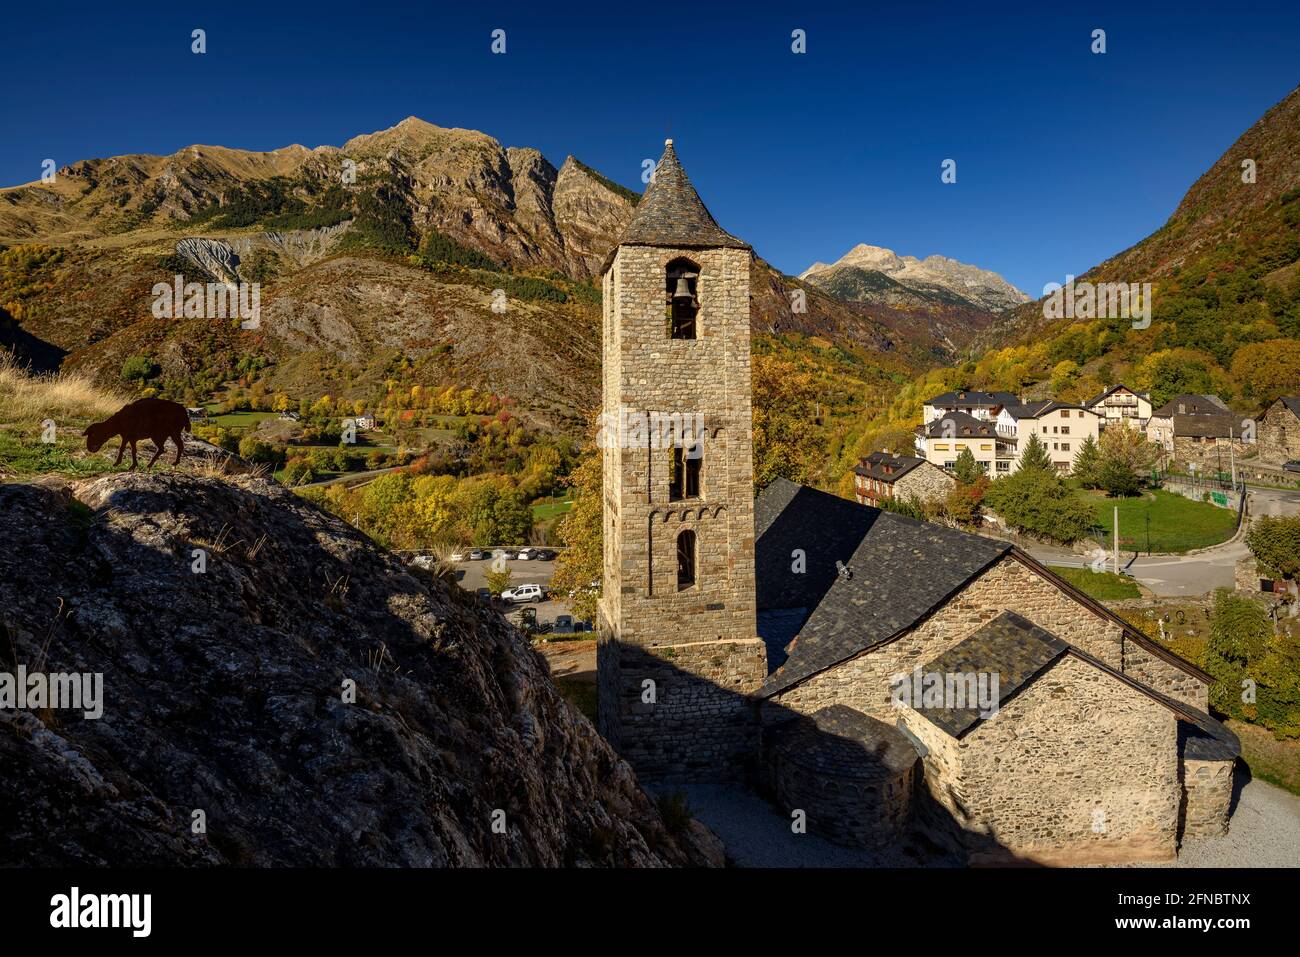 Romanesque church of Sant Joan de Boí in autumn (Vall de Boí, Catalonia, Spain, Pyrenees)  ESP:  Iglesia románica de Sant Joan de Boí en otoño, España Stock Photo